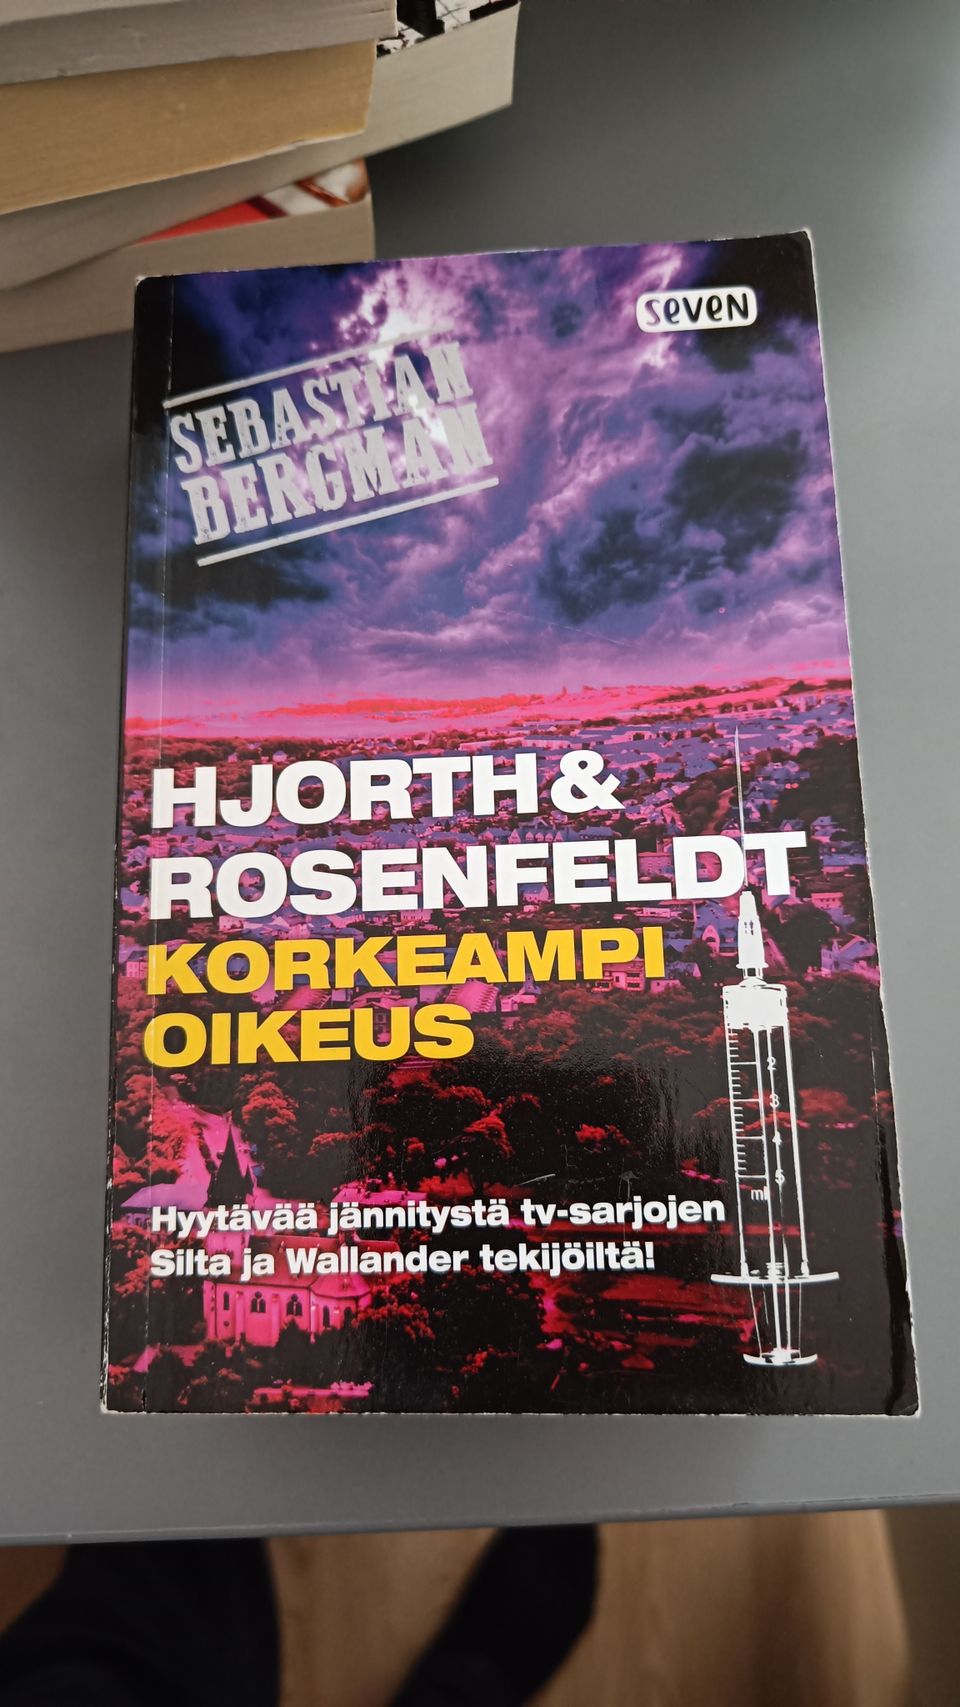 Korkeampi oikeus - Hjorth & Rosenfeld